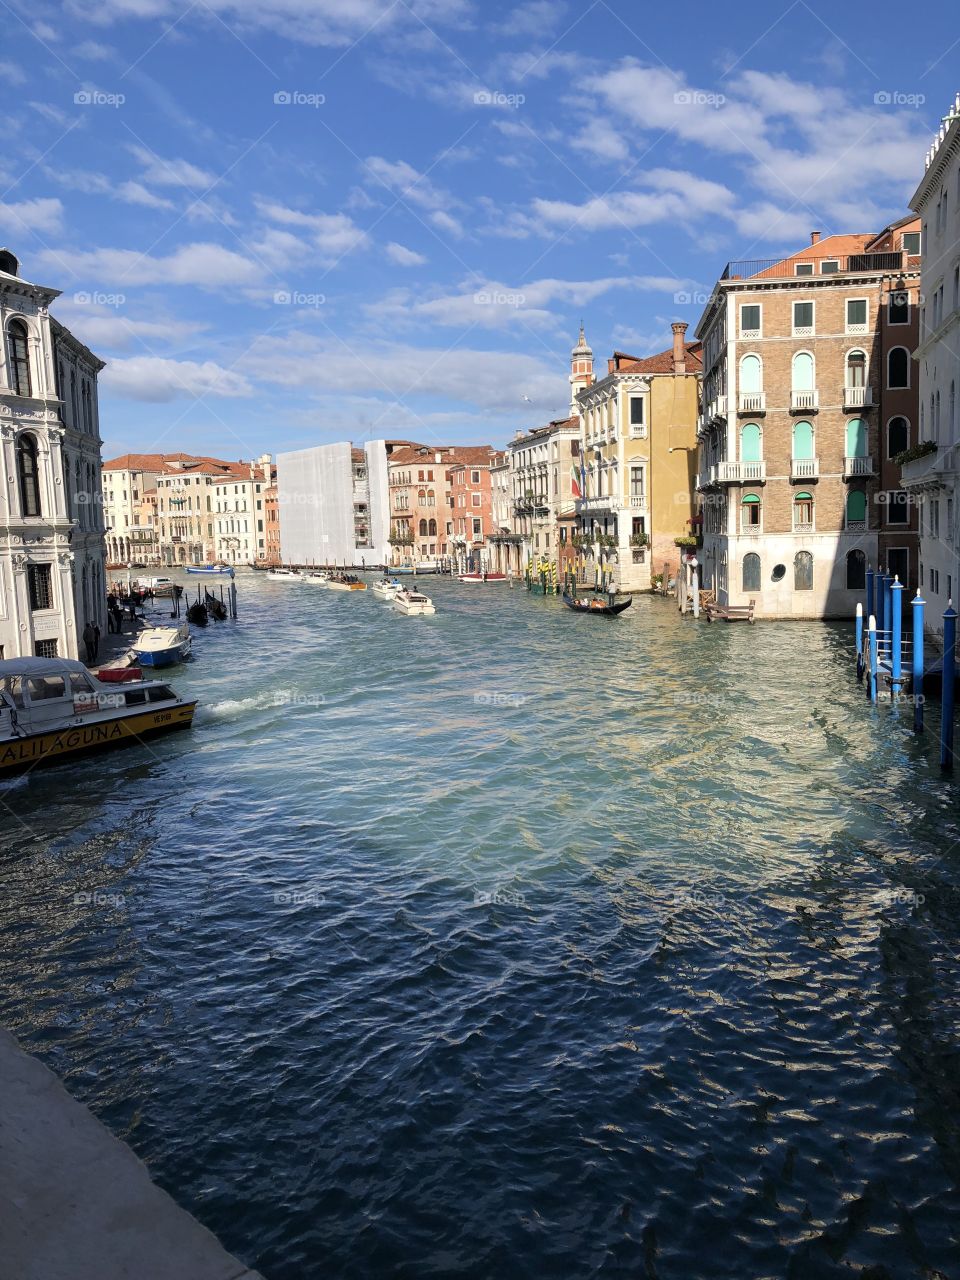 Venedig 